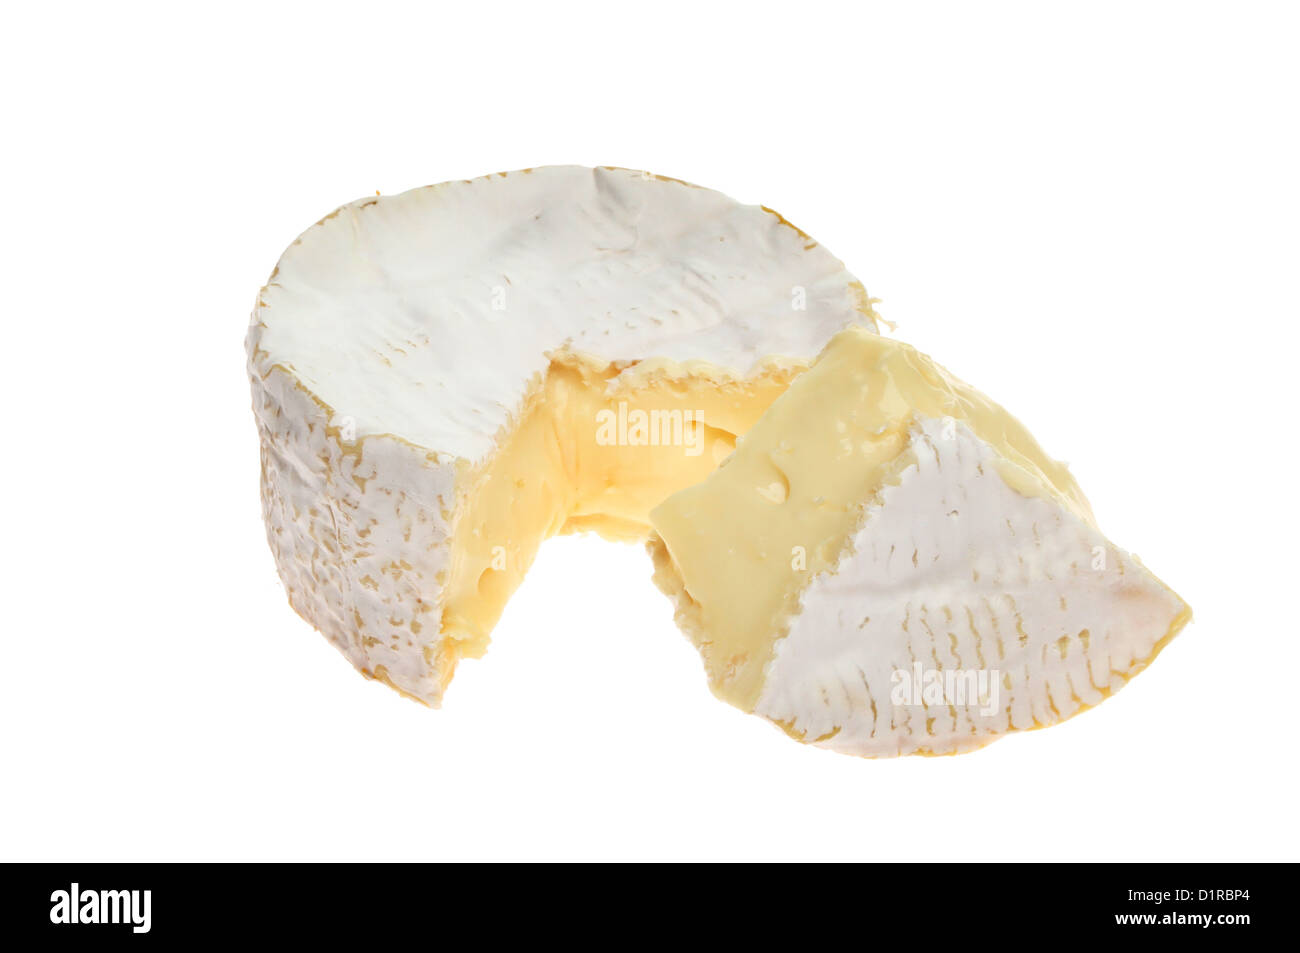 Morbida crema di formaggio camembert con una porzione tagliata isolata contro bianco Foto Stock